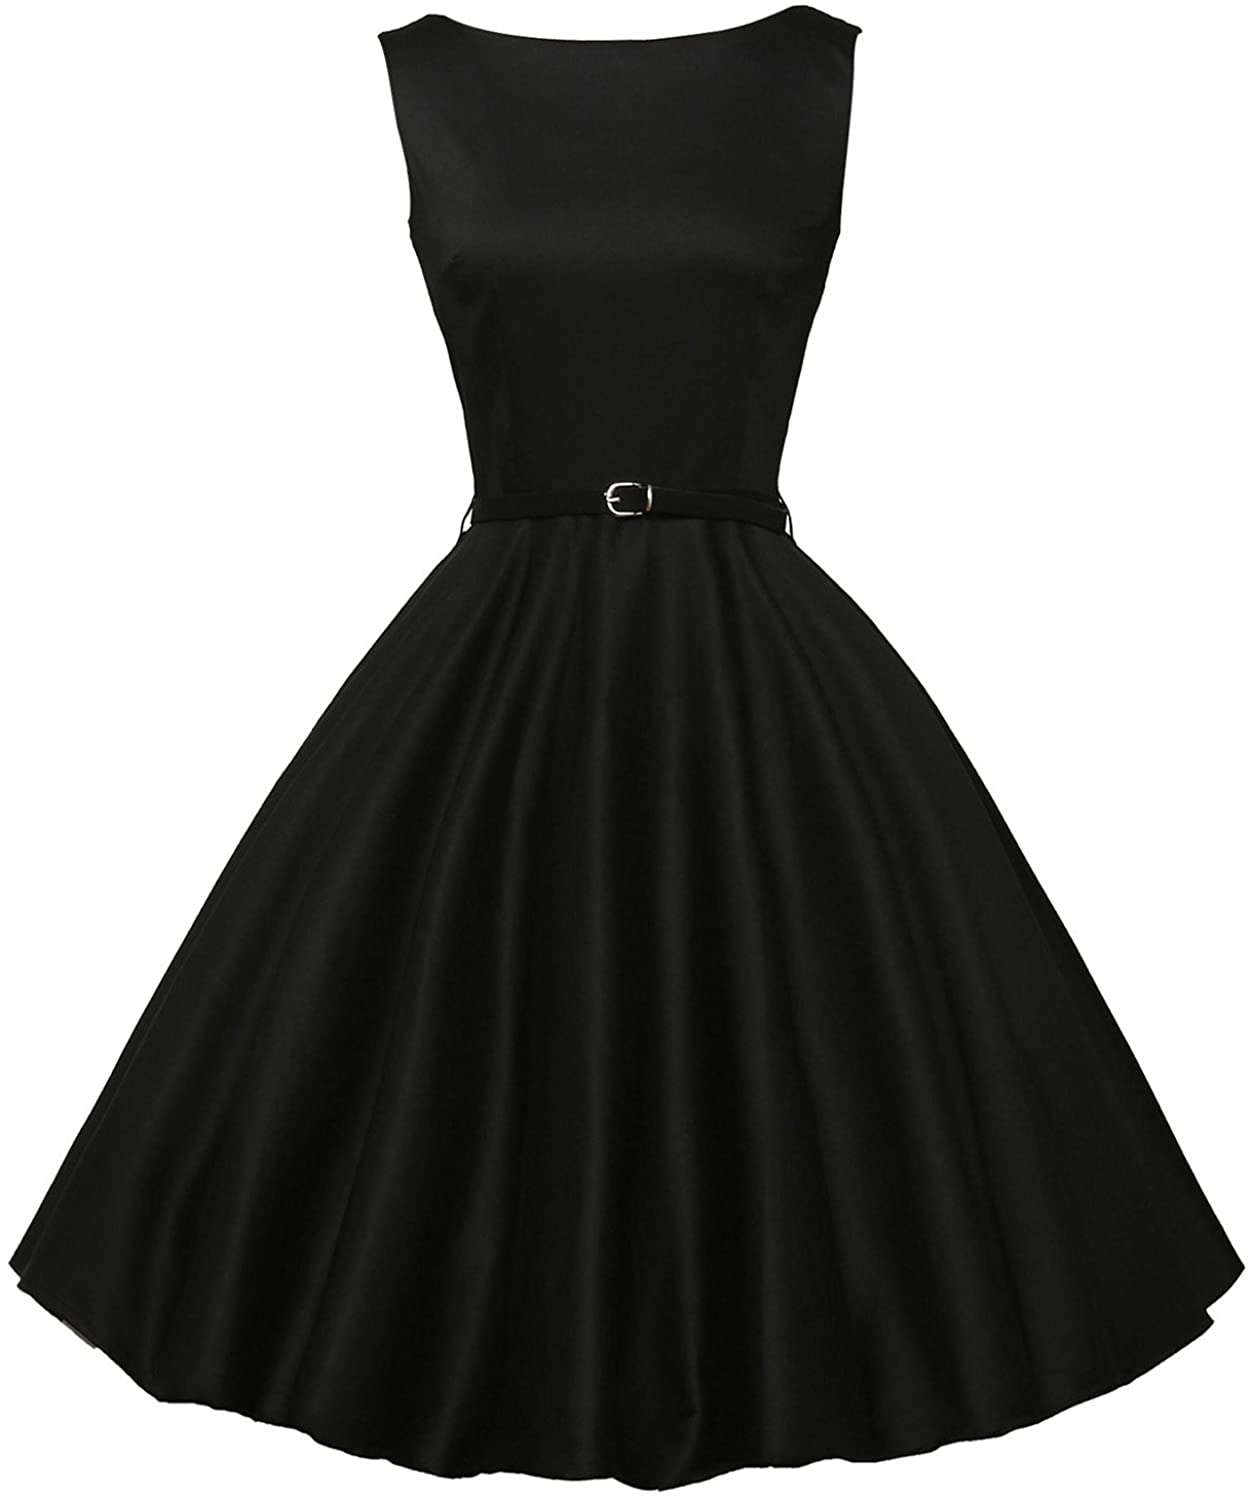 Одри Хепберн в черном платье